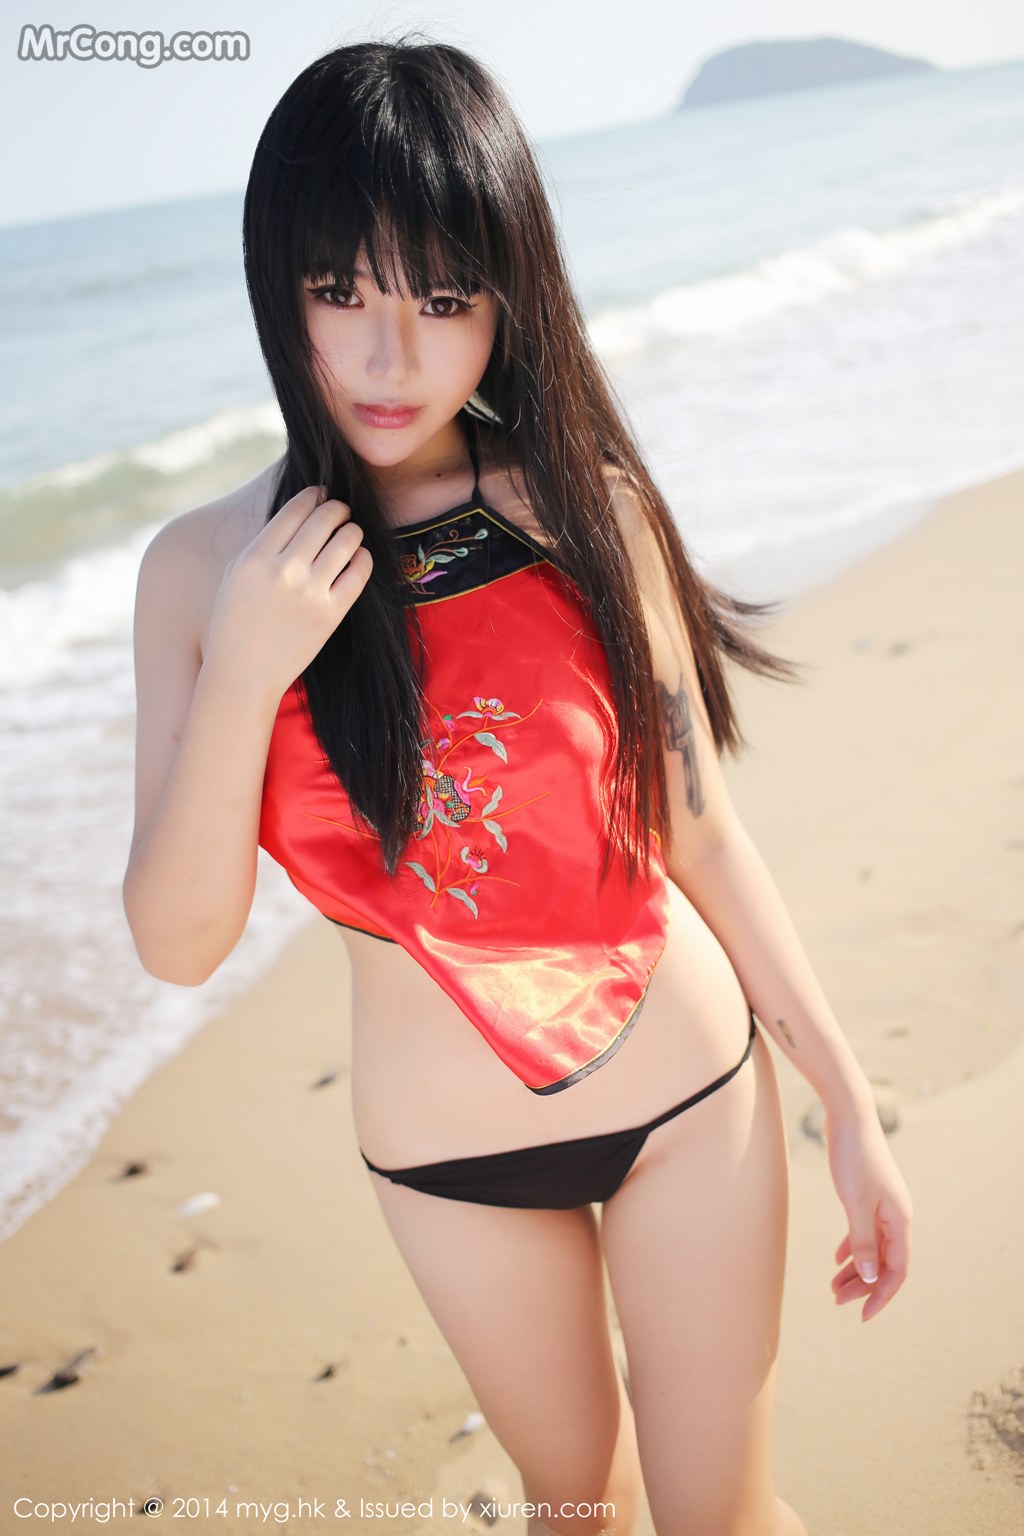 MyGirl Vol.075: Model Ba Bao icey (八宝 icey) (67 photos) photo 3-9